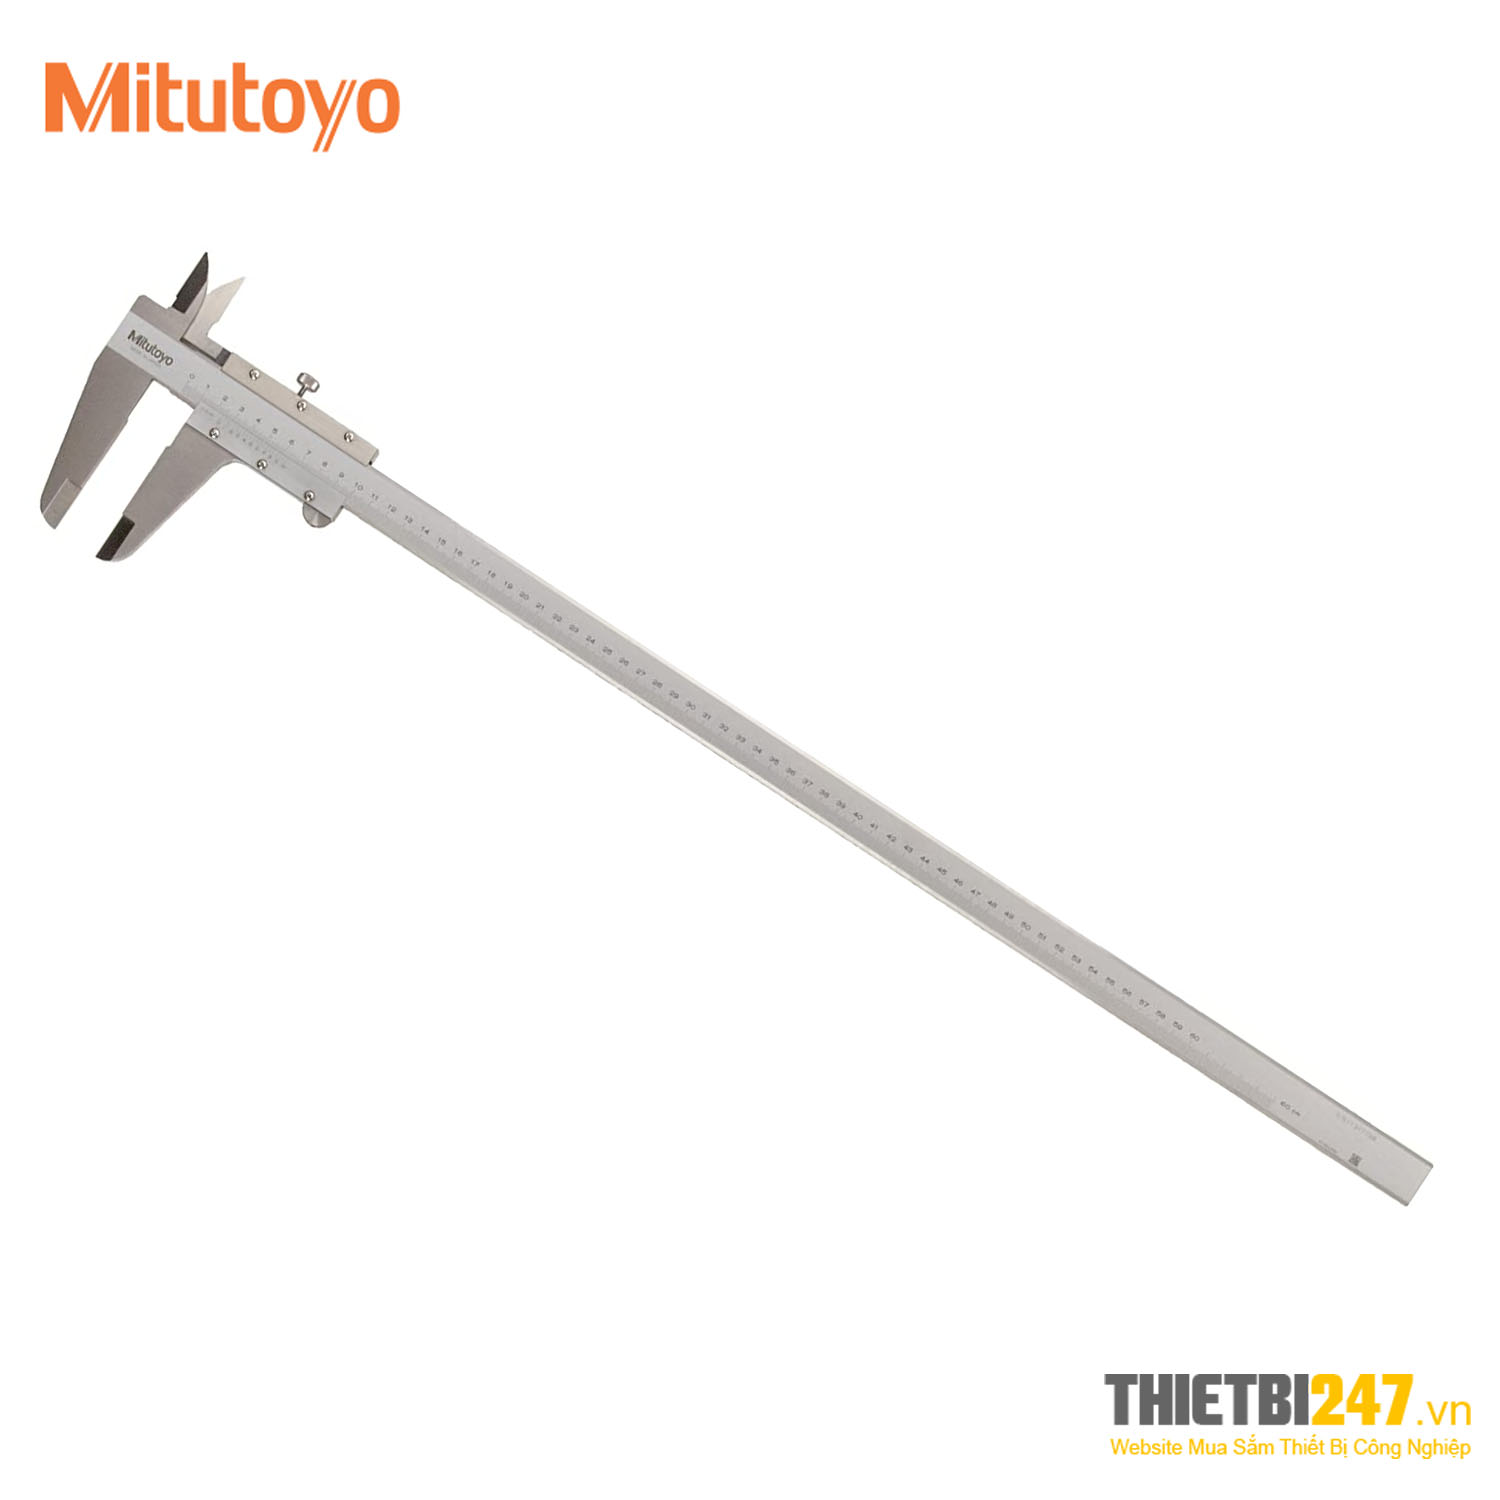 Thước cặp cơ 0-600mm 0.05mm 530-501 Mitutoyo